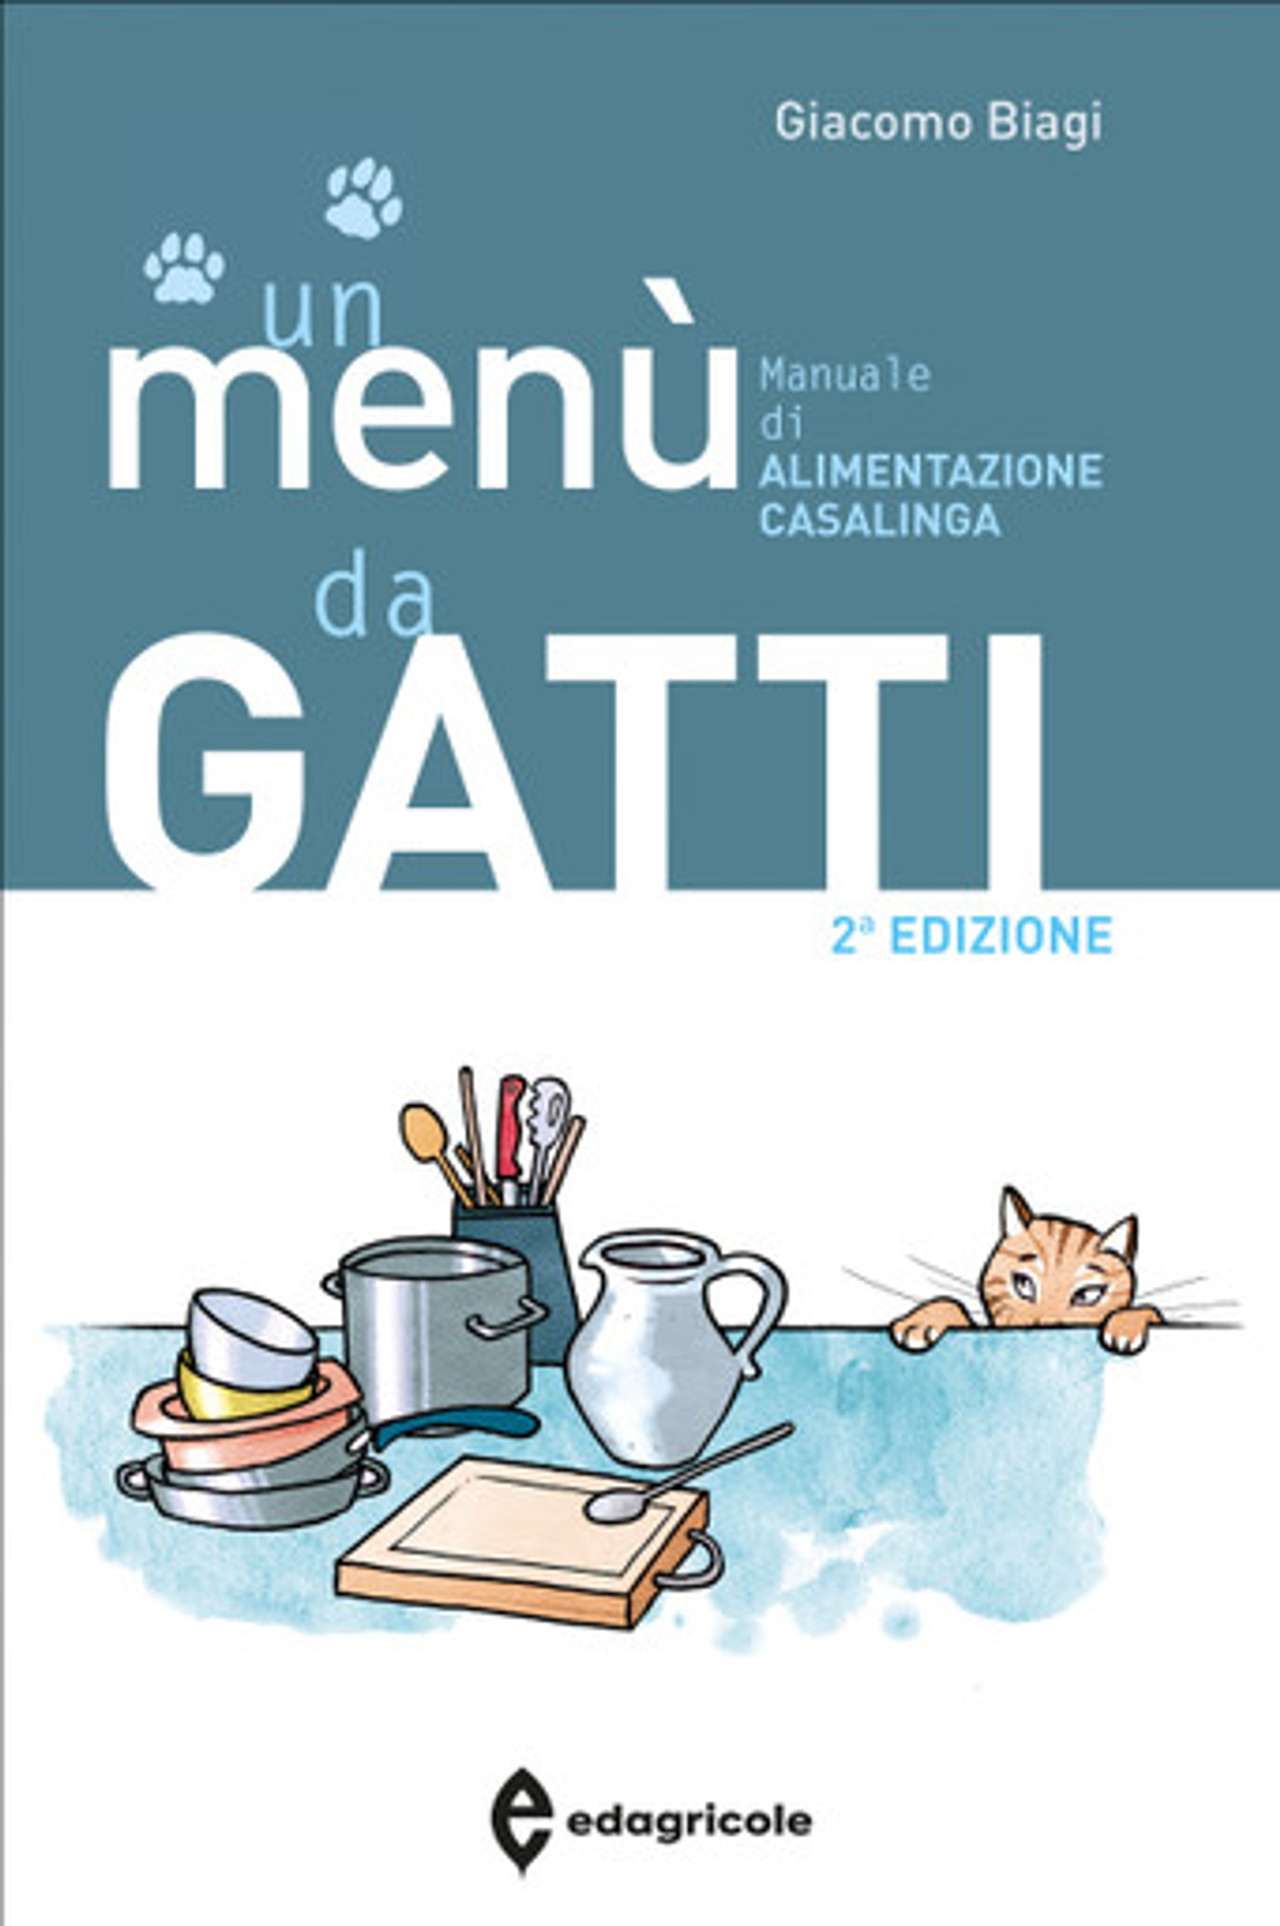 Un menù da GATTI, manuale di alimentazione casalinga